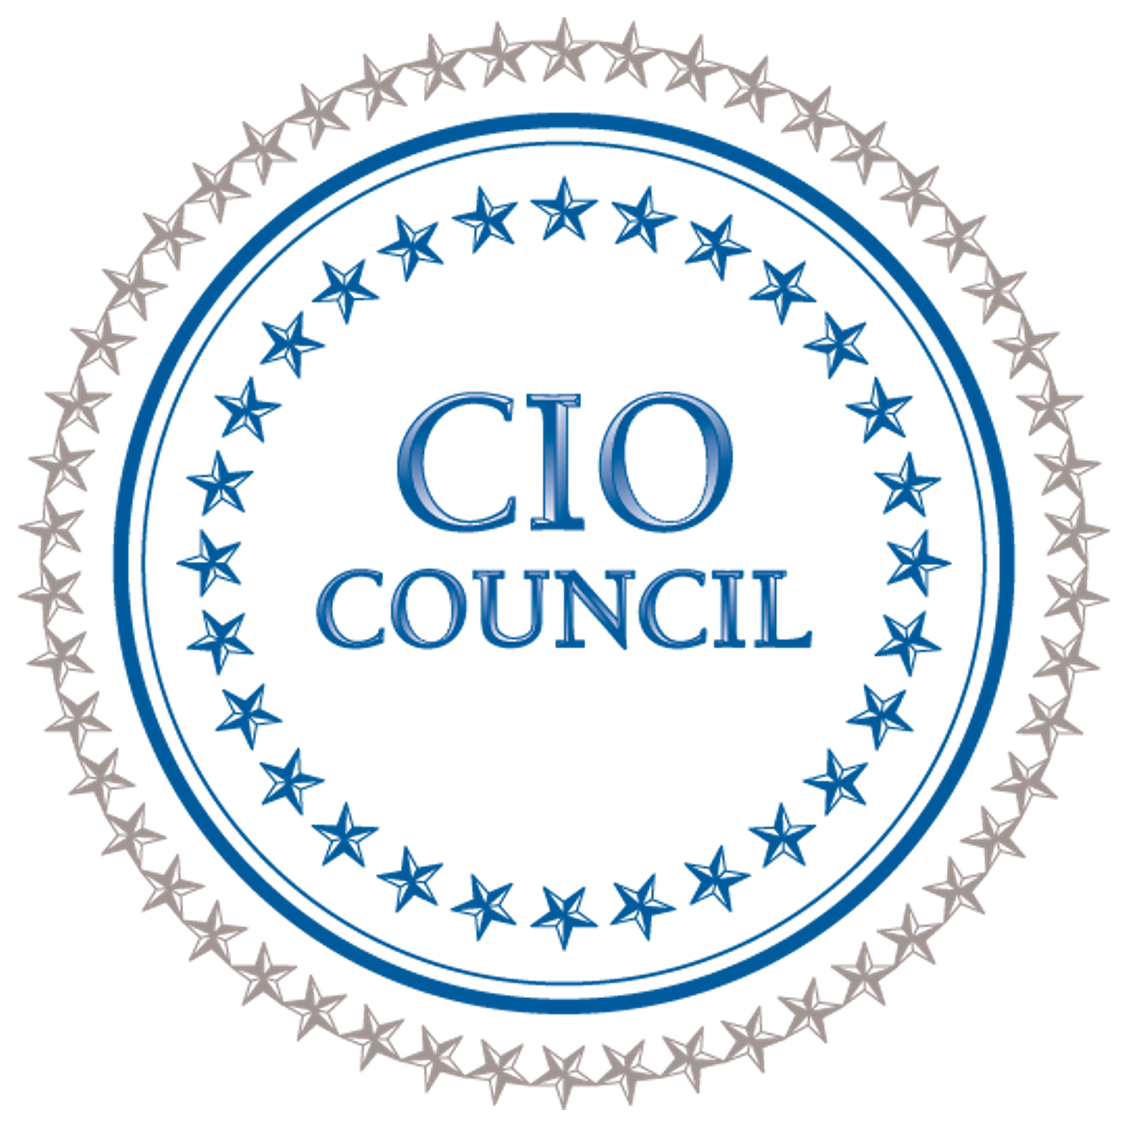 CIO Council seal